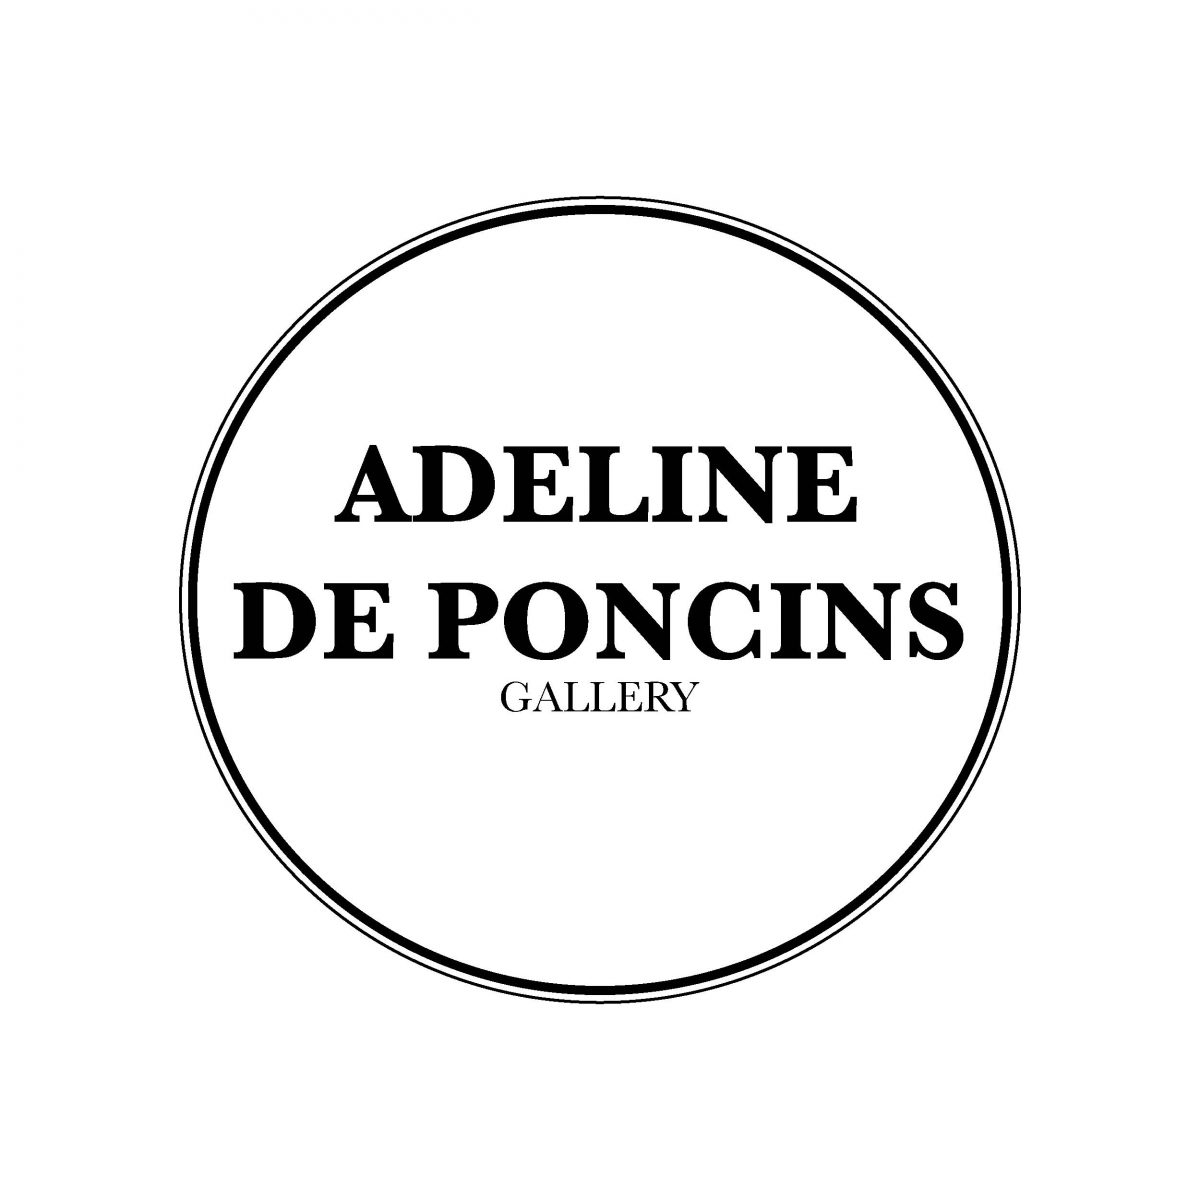 Adeline de Poncins Gallery